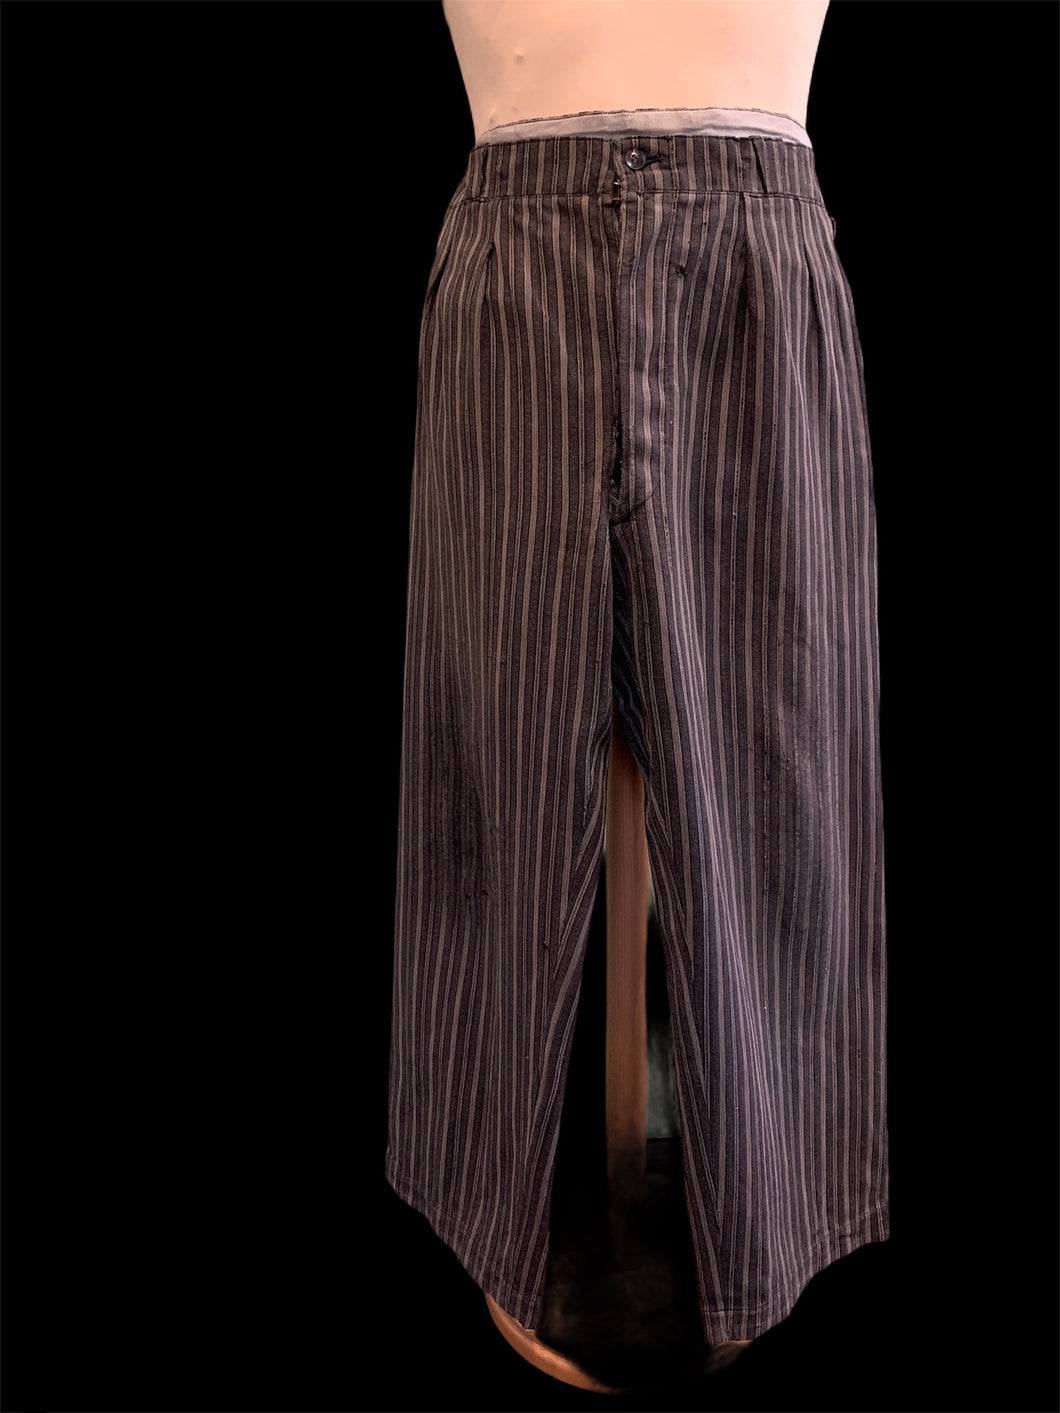 Pantalon St Hubert années 30. Taille 46